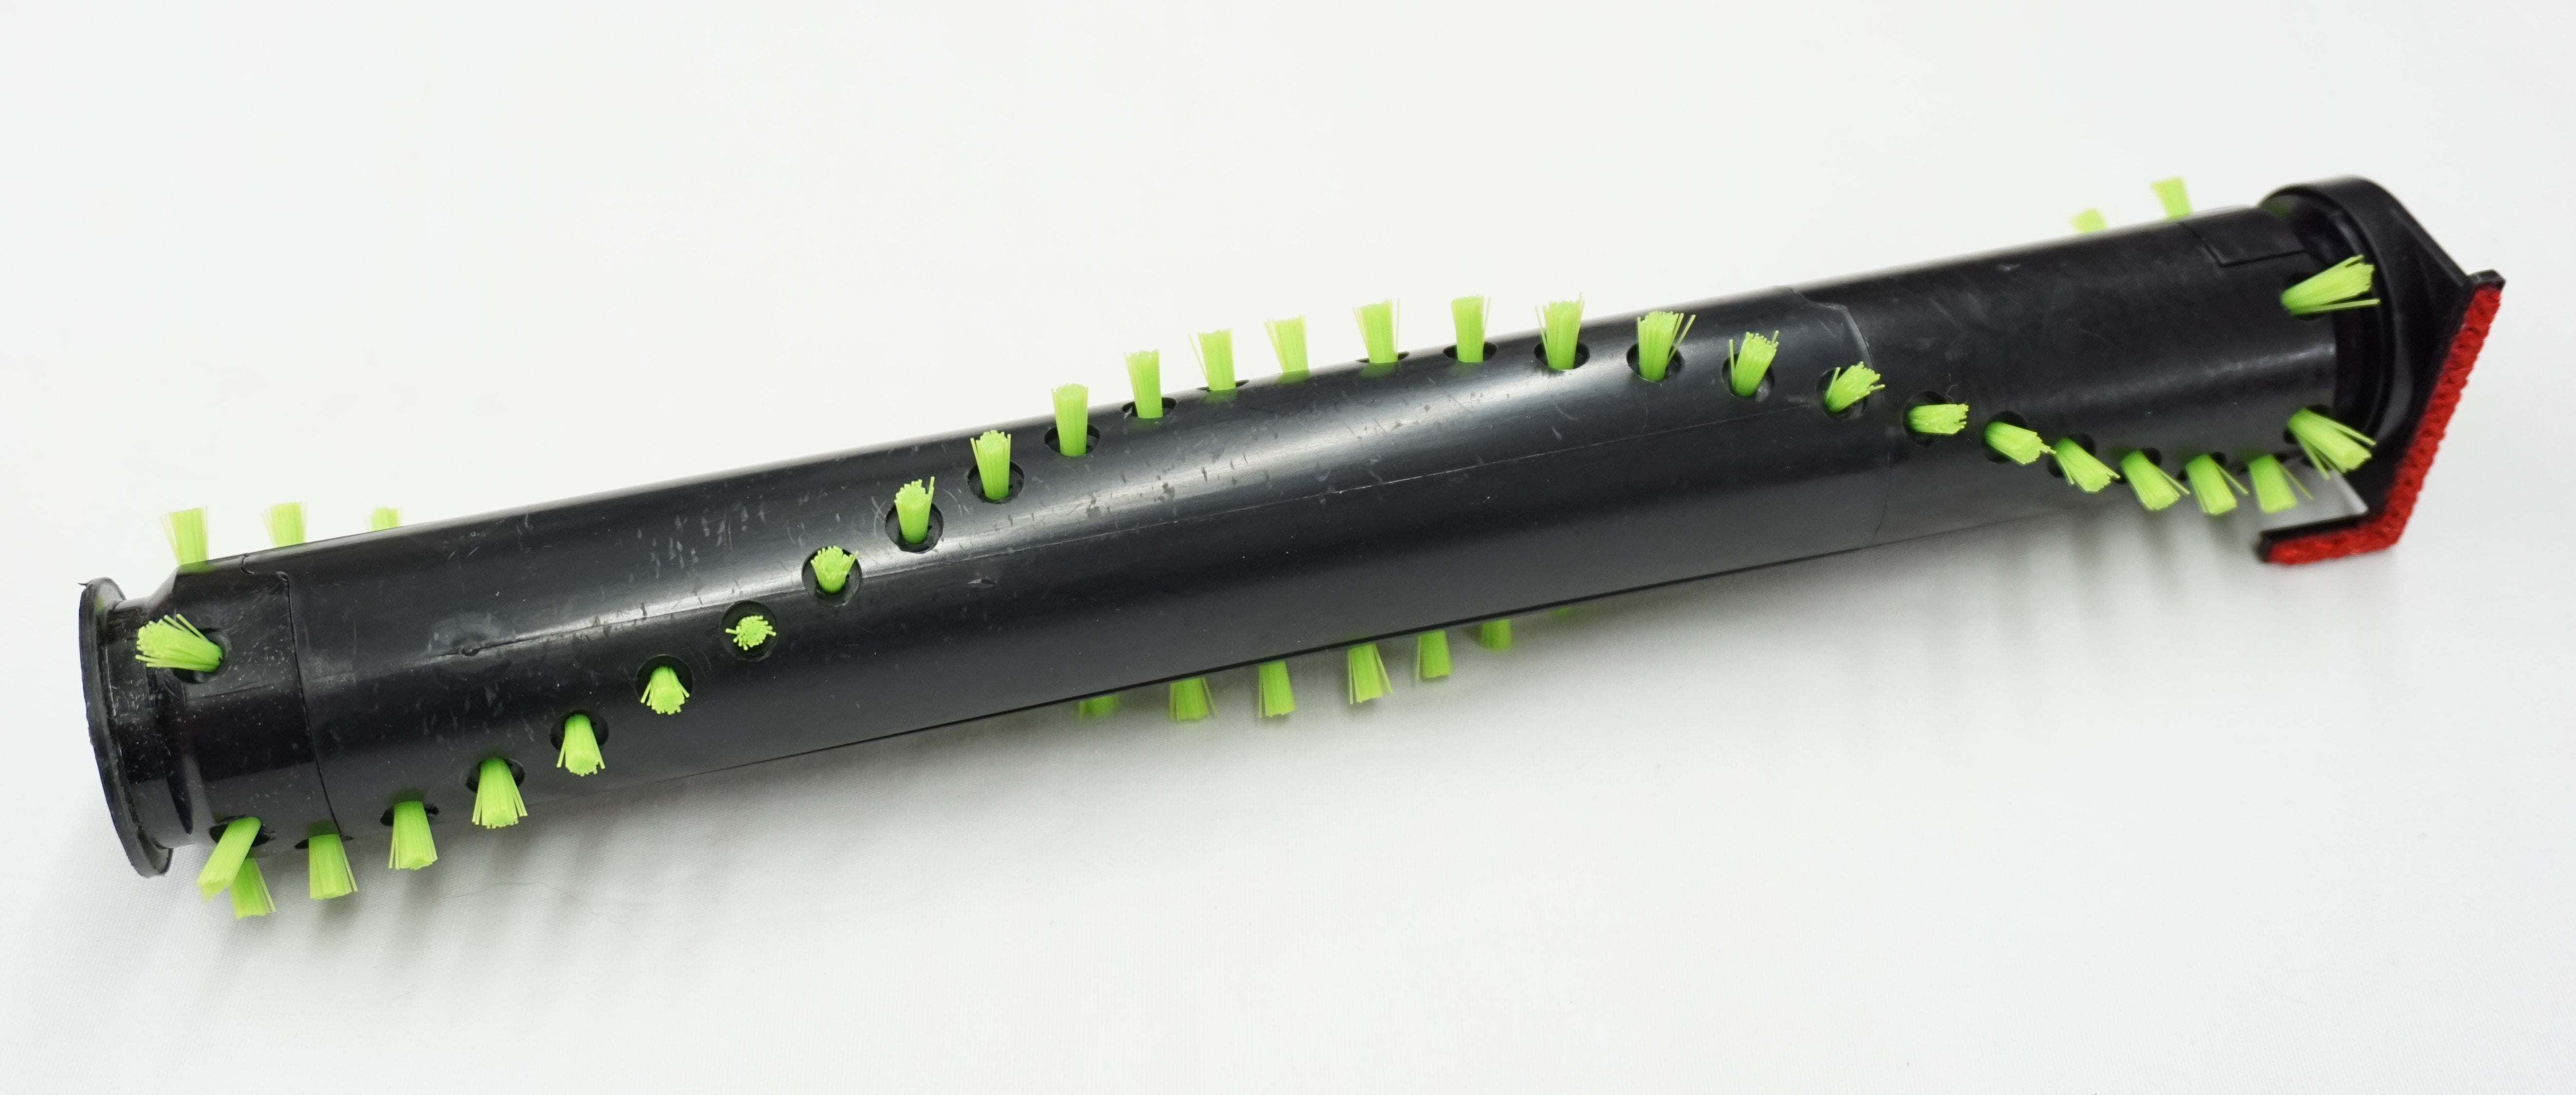 Brushroll Roller Bar Plastic End Caps Kit for GTECH AirRam AR05 Cordless Vacuum 